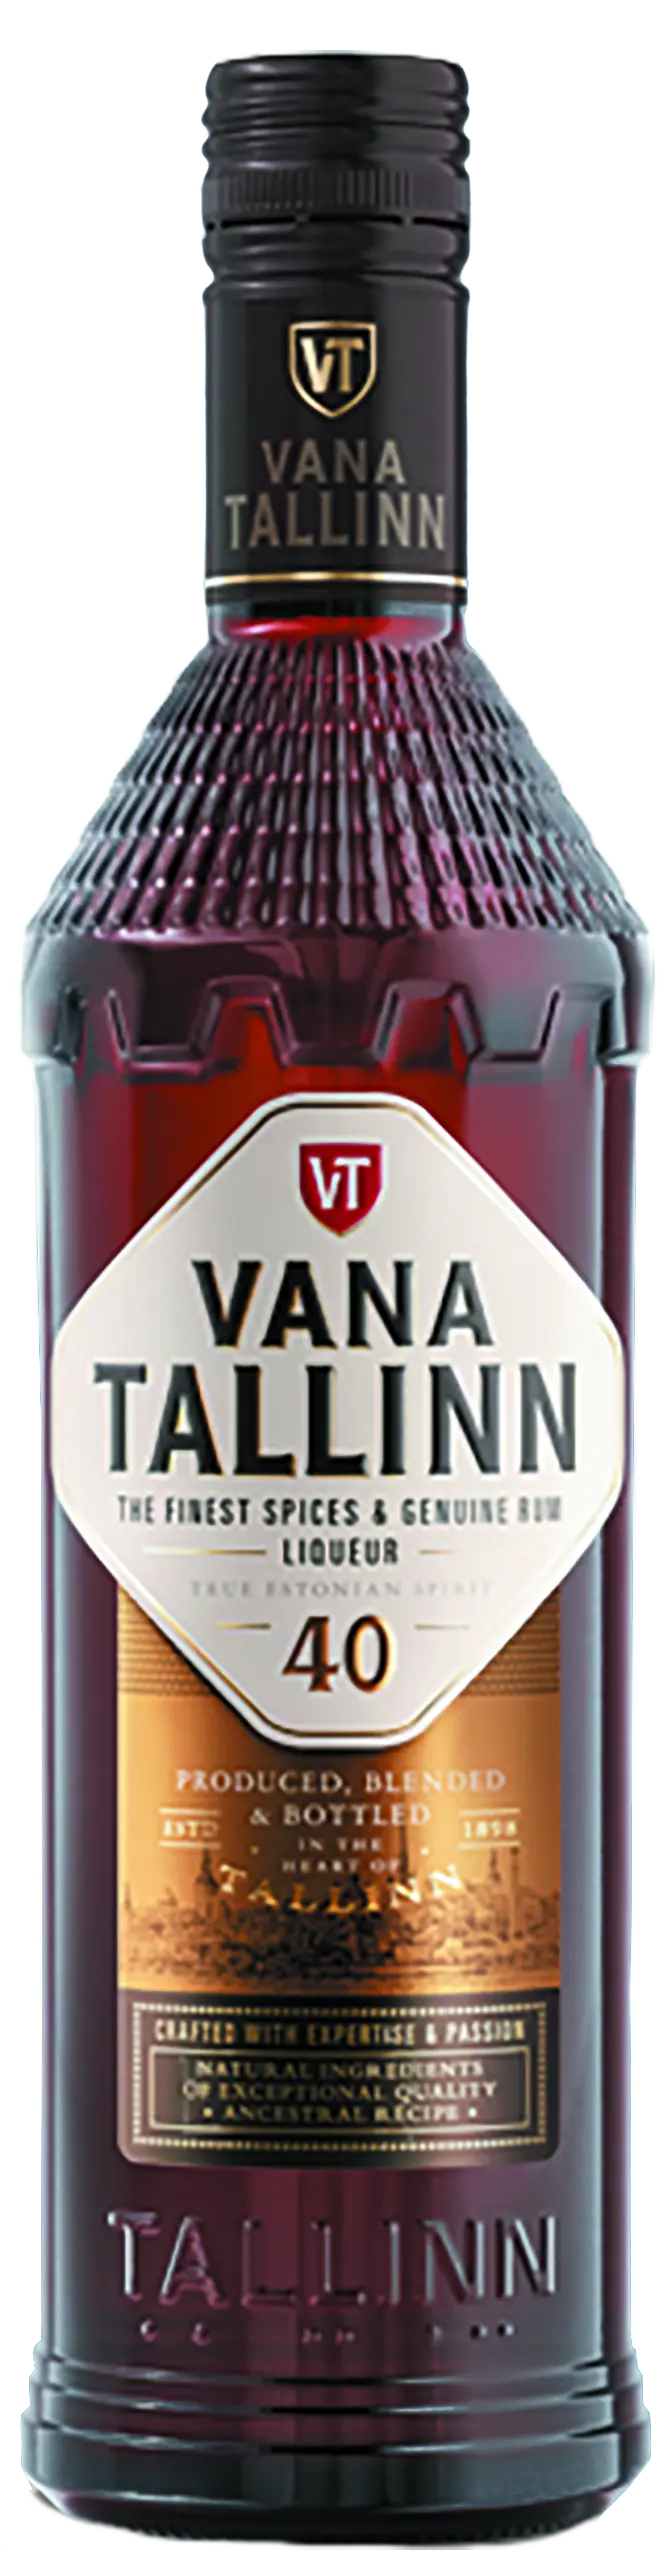 Vana Tallinn (Вана Таллинн крепкий)